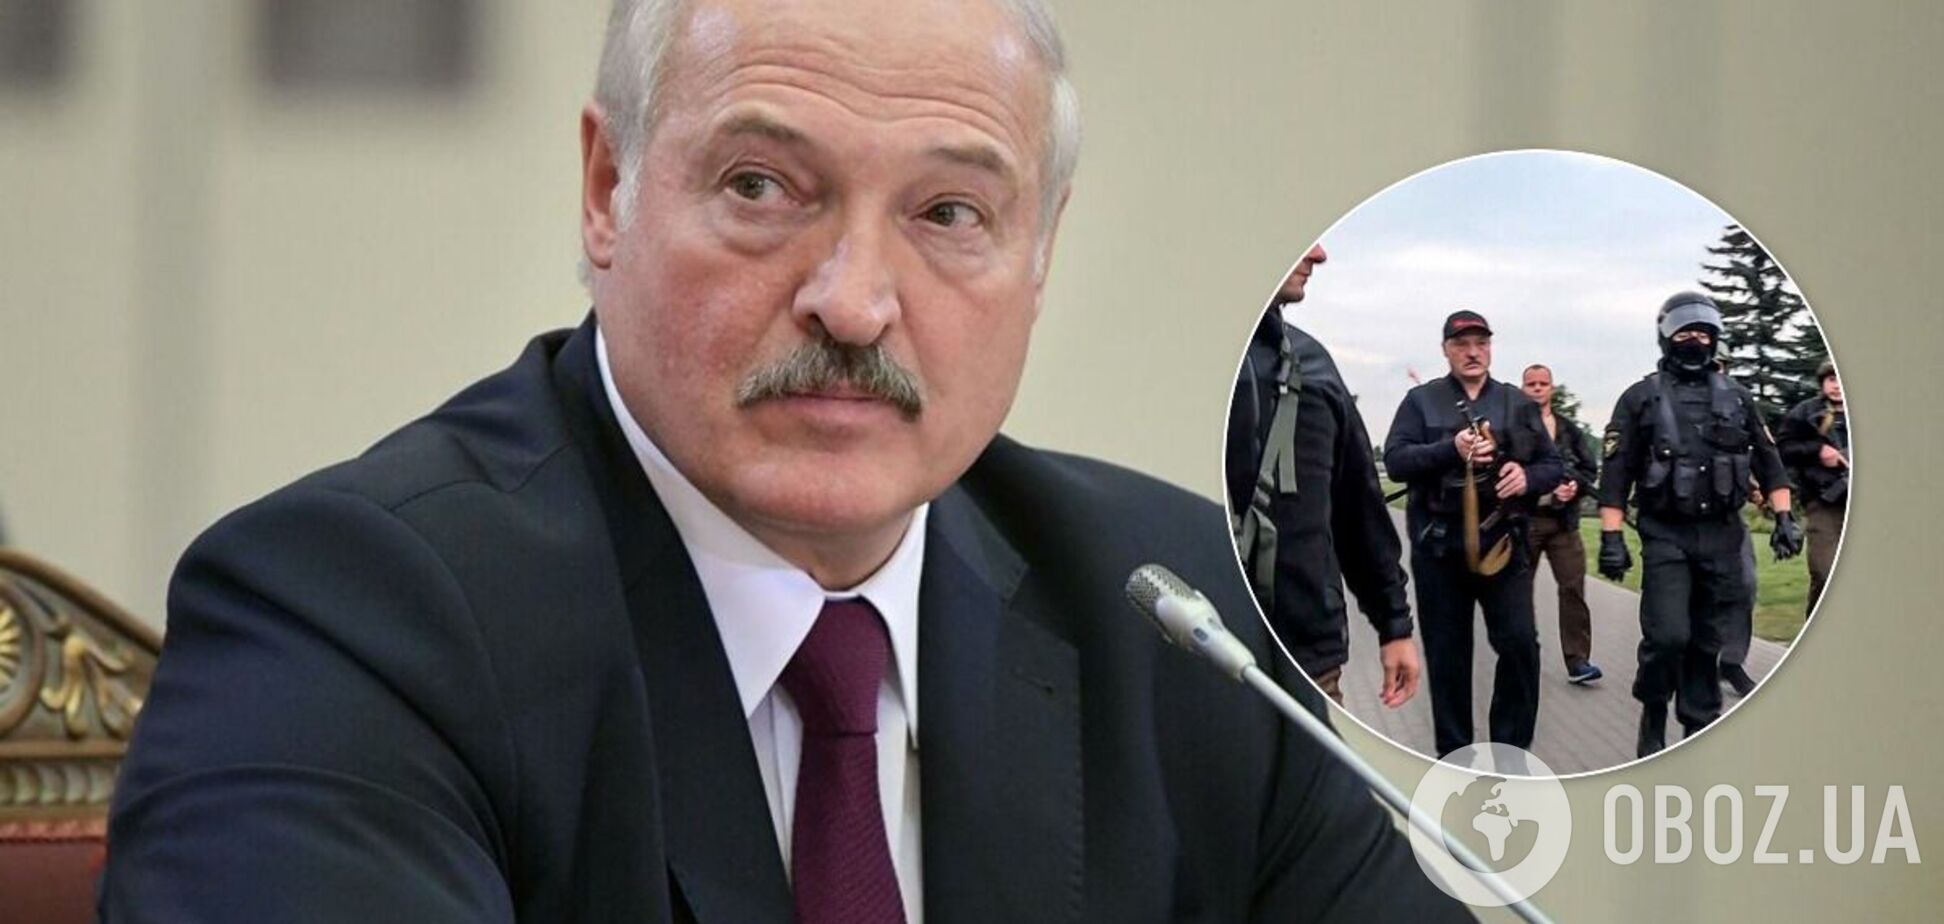 Лукашенко з'явився з автоматом 23 серпня